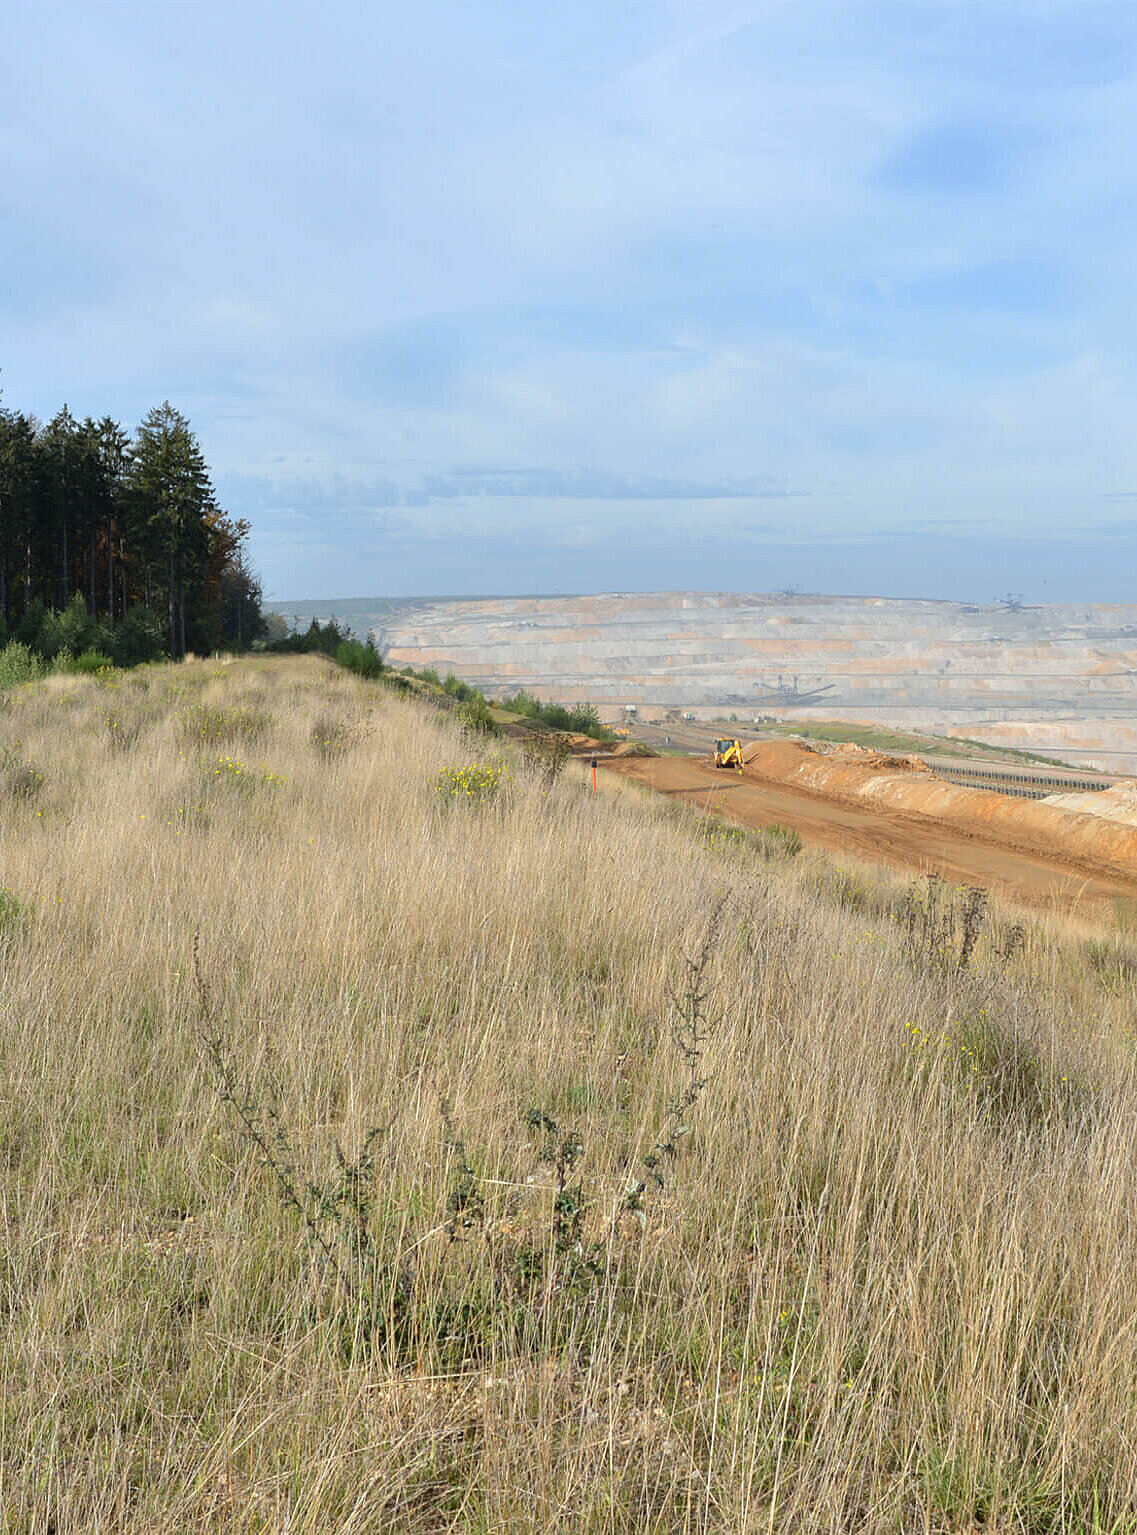 Die rund 4.200 ha große Tagebaugrube soll während der Seeentstehung vielfältig genutzt werden